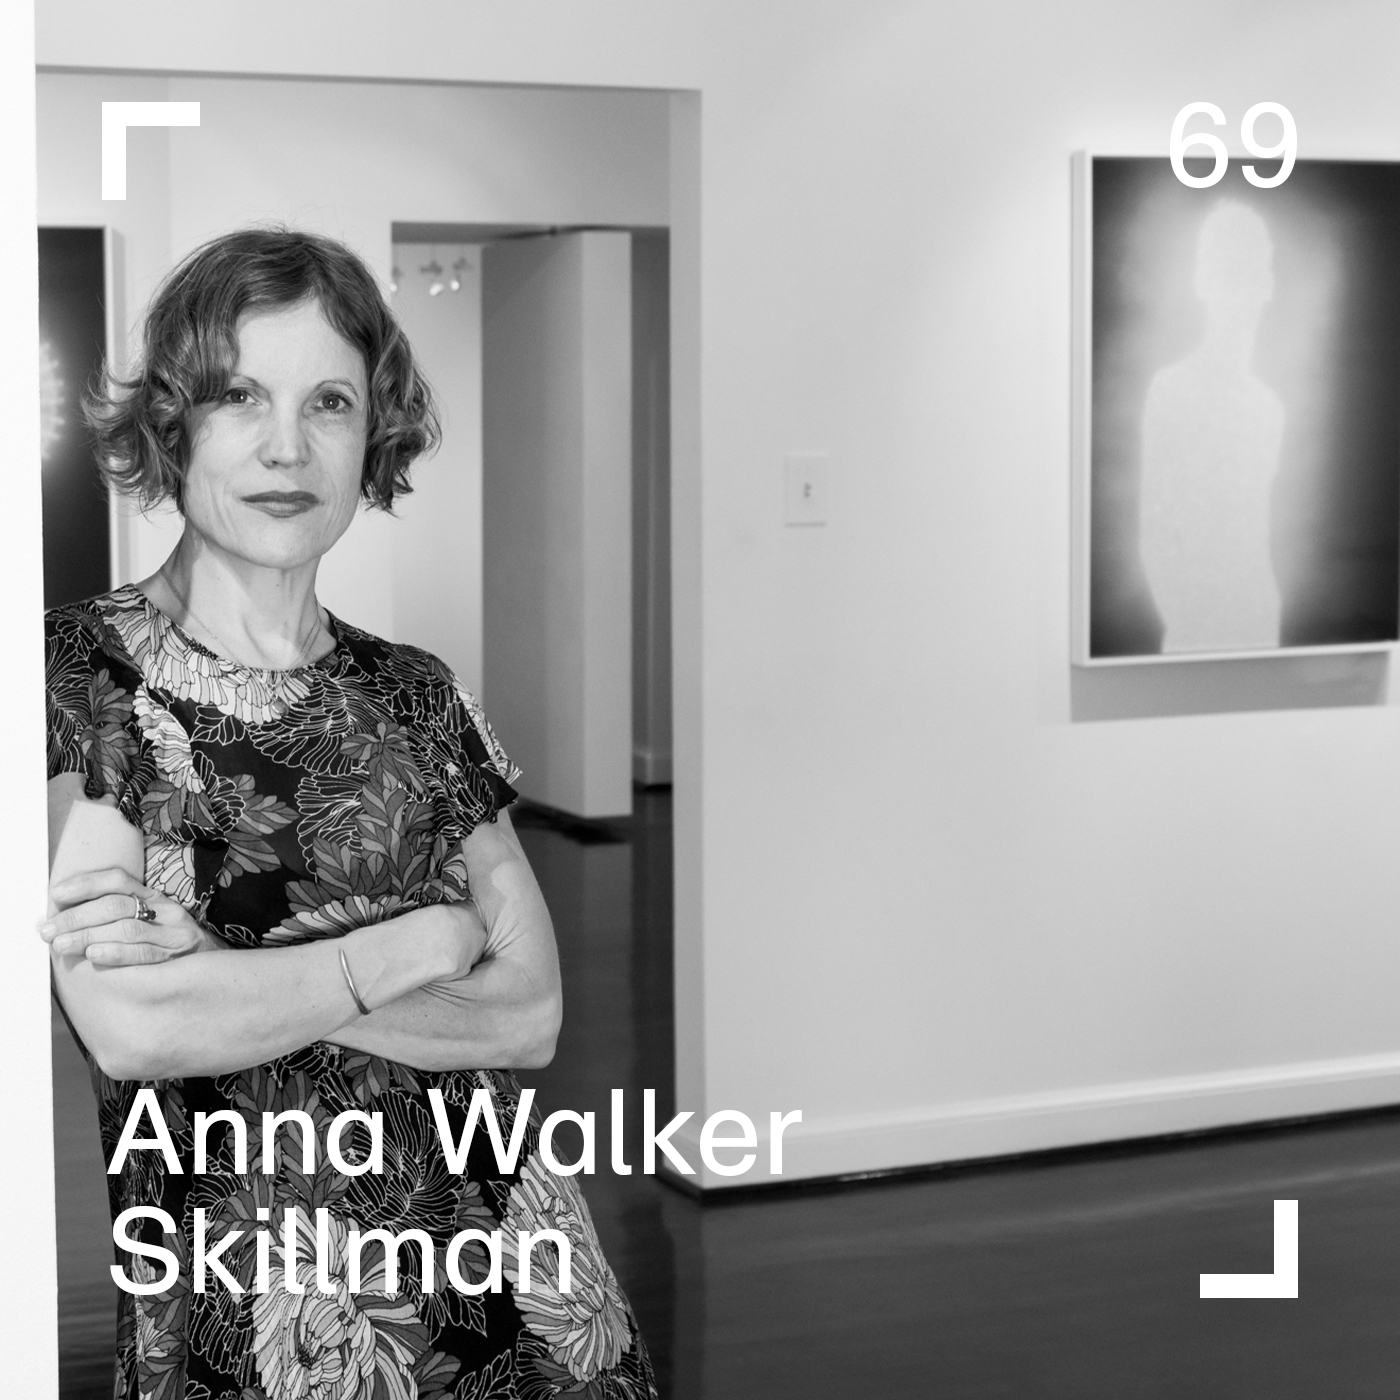 Anna Walker Skillman